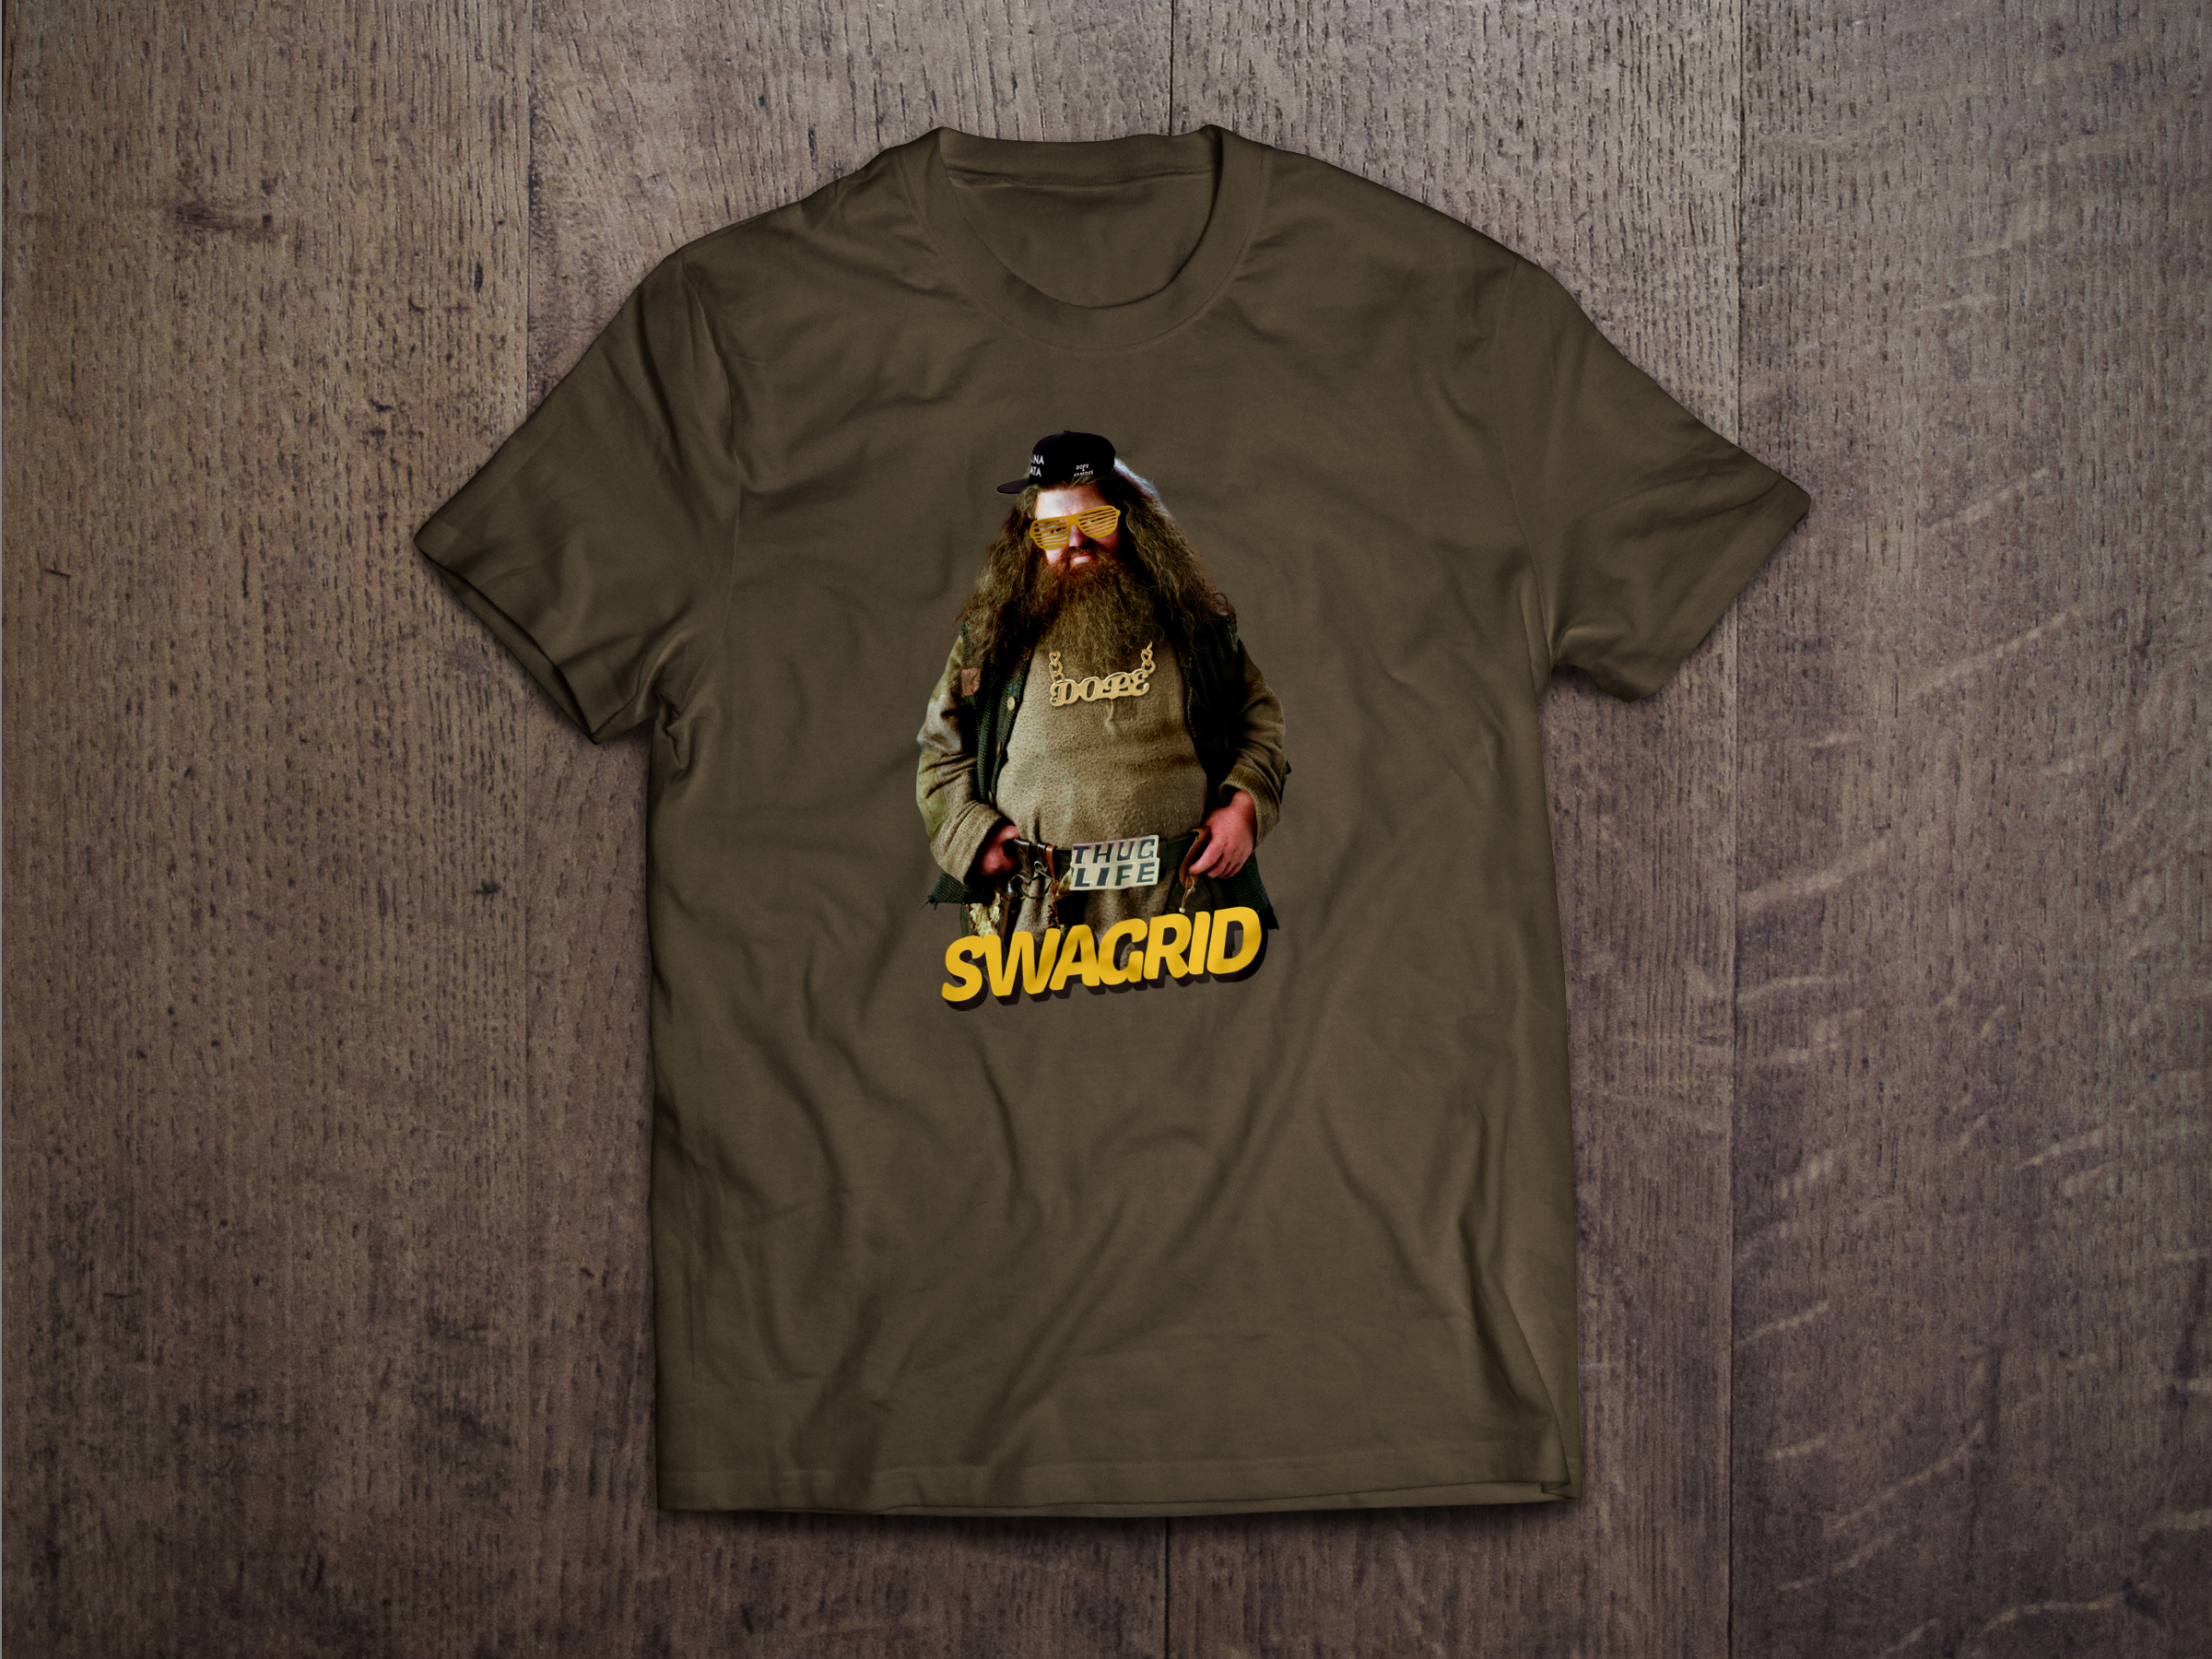 This Swagrid shirt - $15